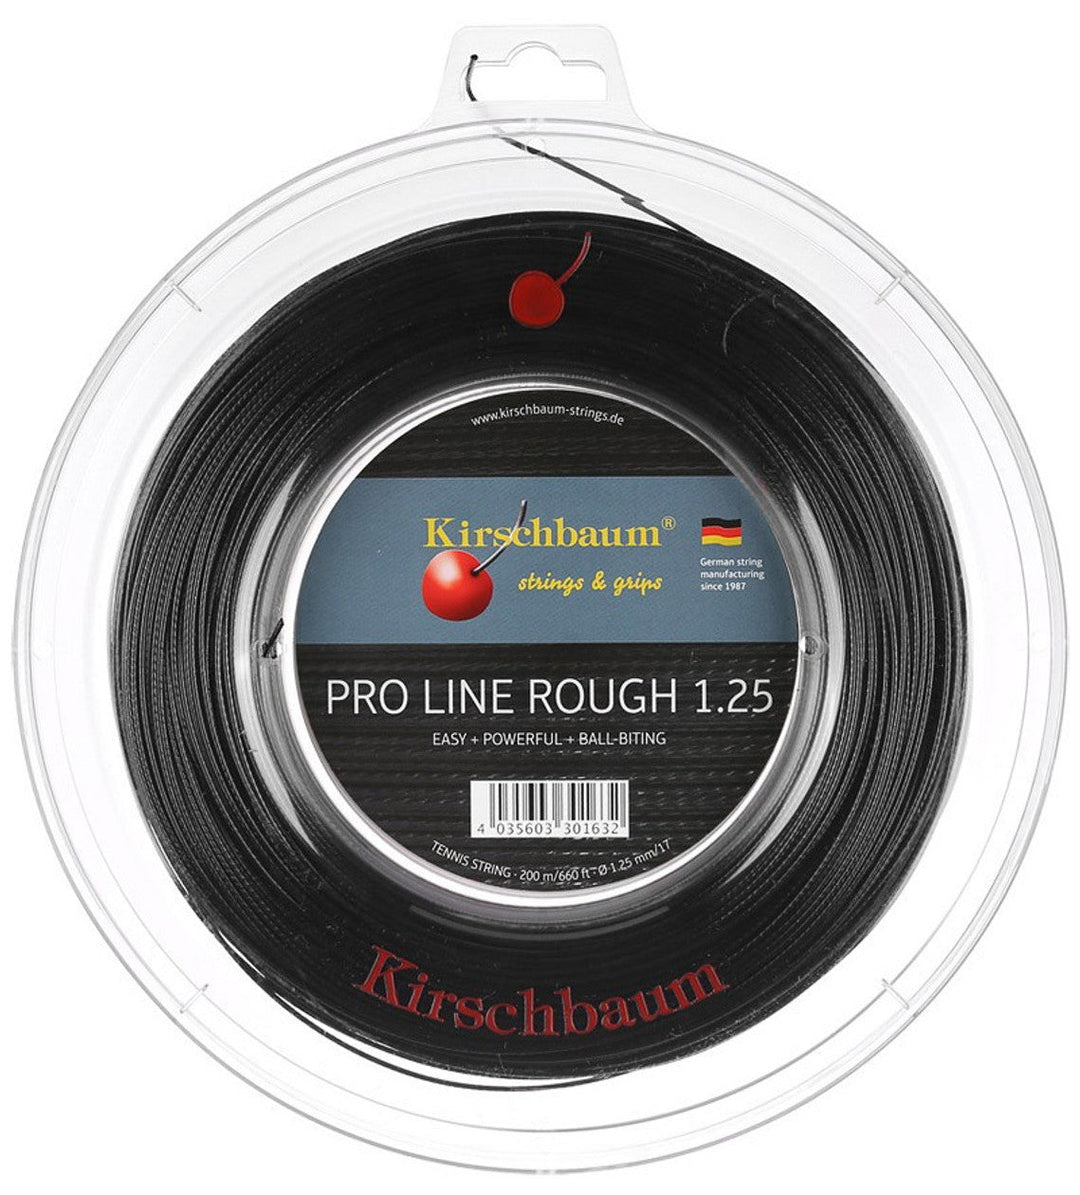 Kirschbaum Pro Line Rough 125 17g Tennis 200M String Reel